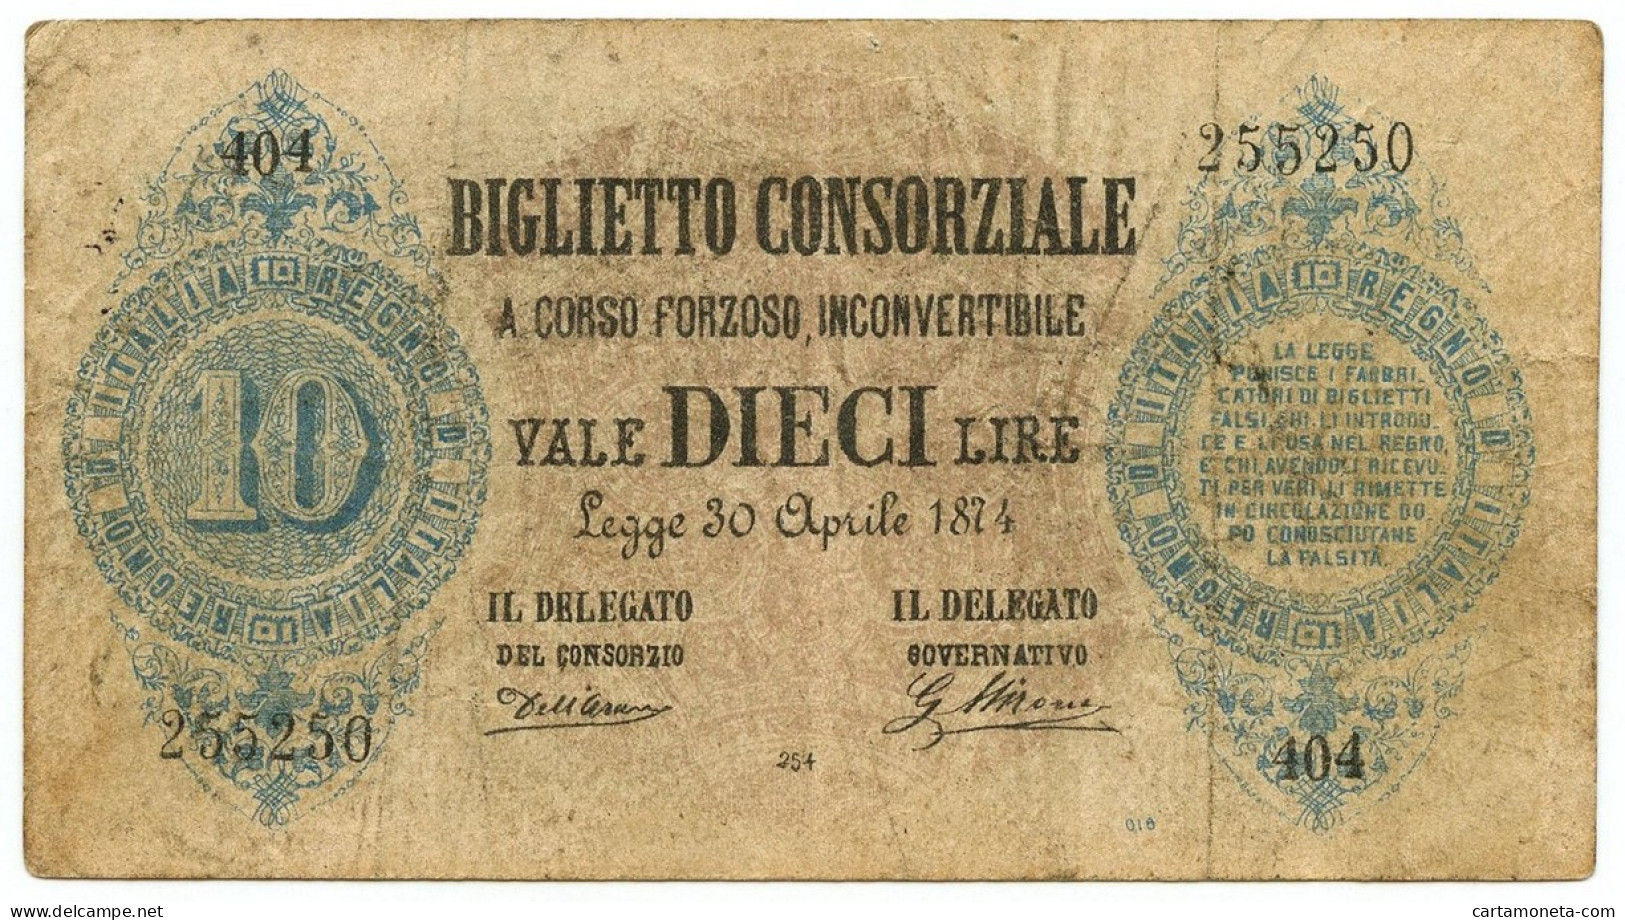 10 LIRE FALSO D'EPOCA BIGLIETTO CONSORZIALE REGNO D'ITALIA 30/04/1874 BB - [ 8] Specimen